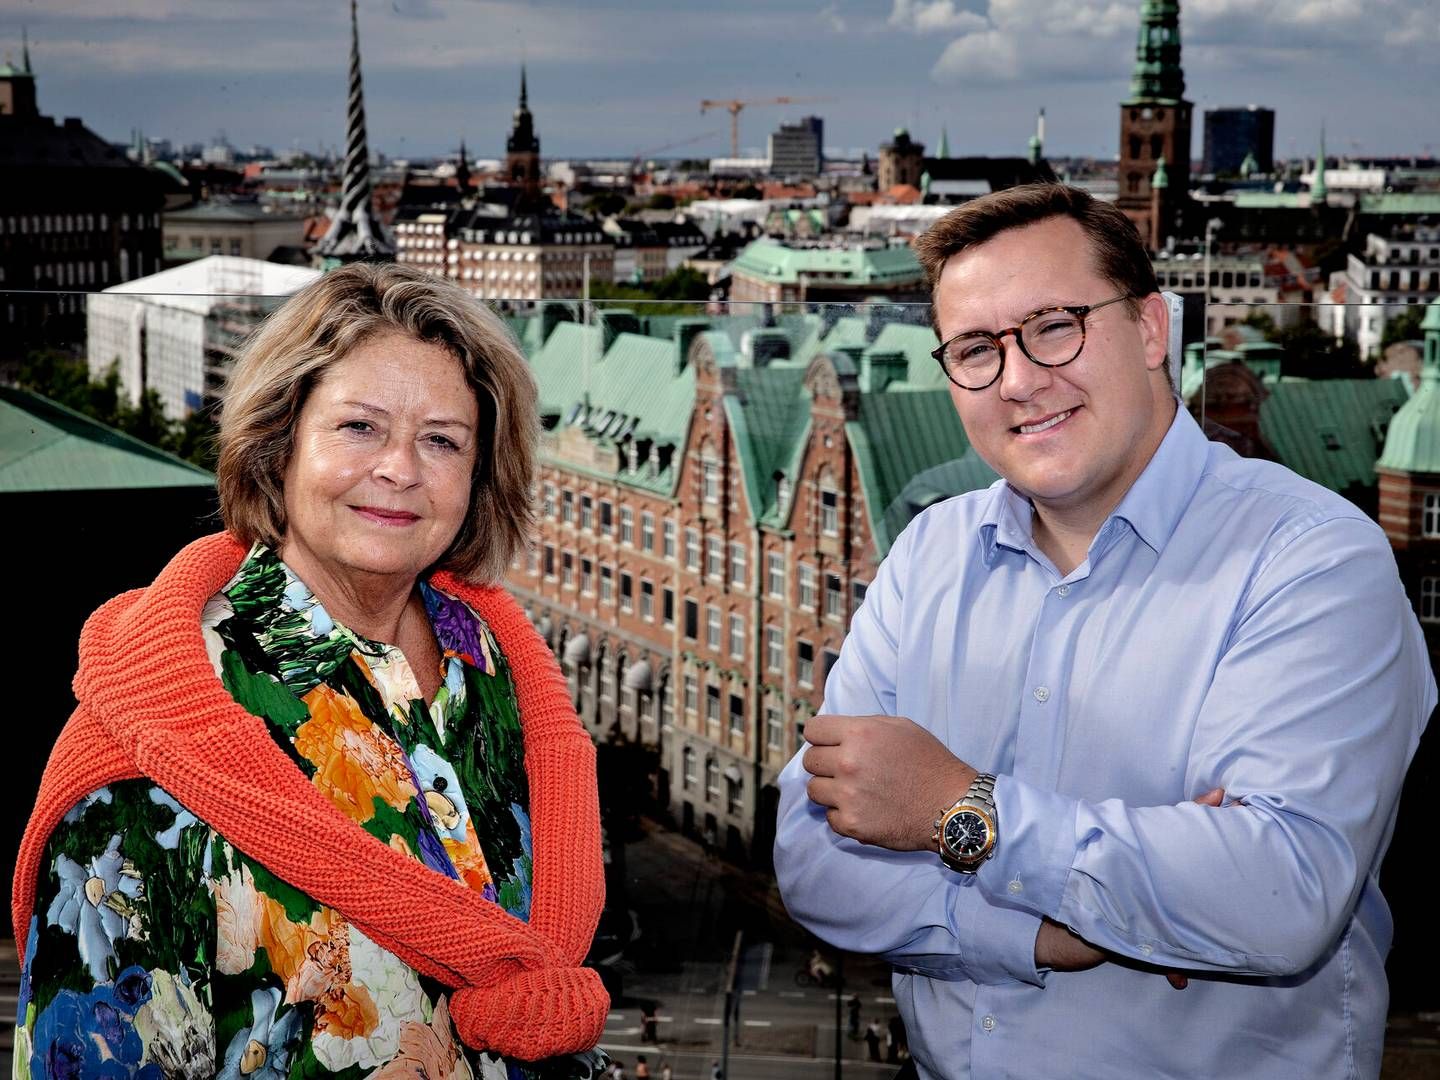 Stine Bosse og Bergur Løkke Rasmussen er spidskandidater til Europaparlamentsvalget i juni i år.